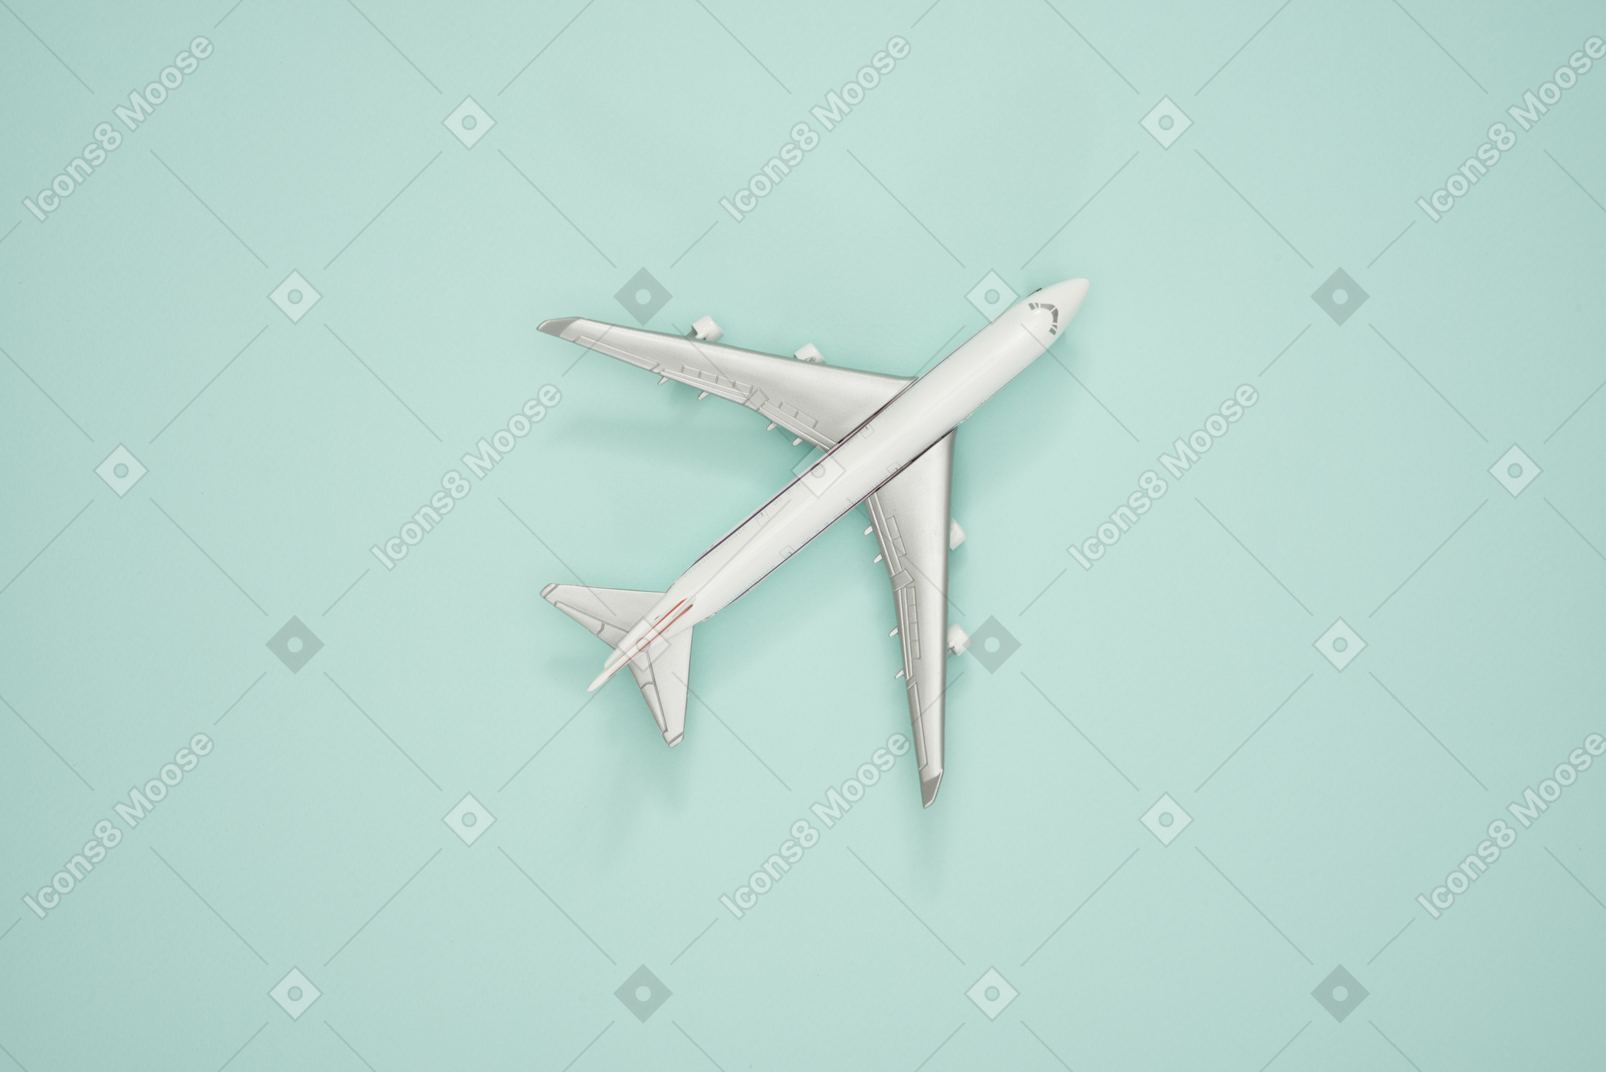 ターコイズブルーの背景に飛行機の縮尺モデル